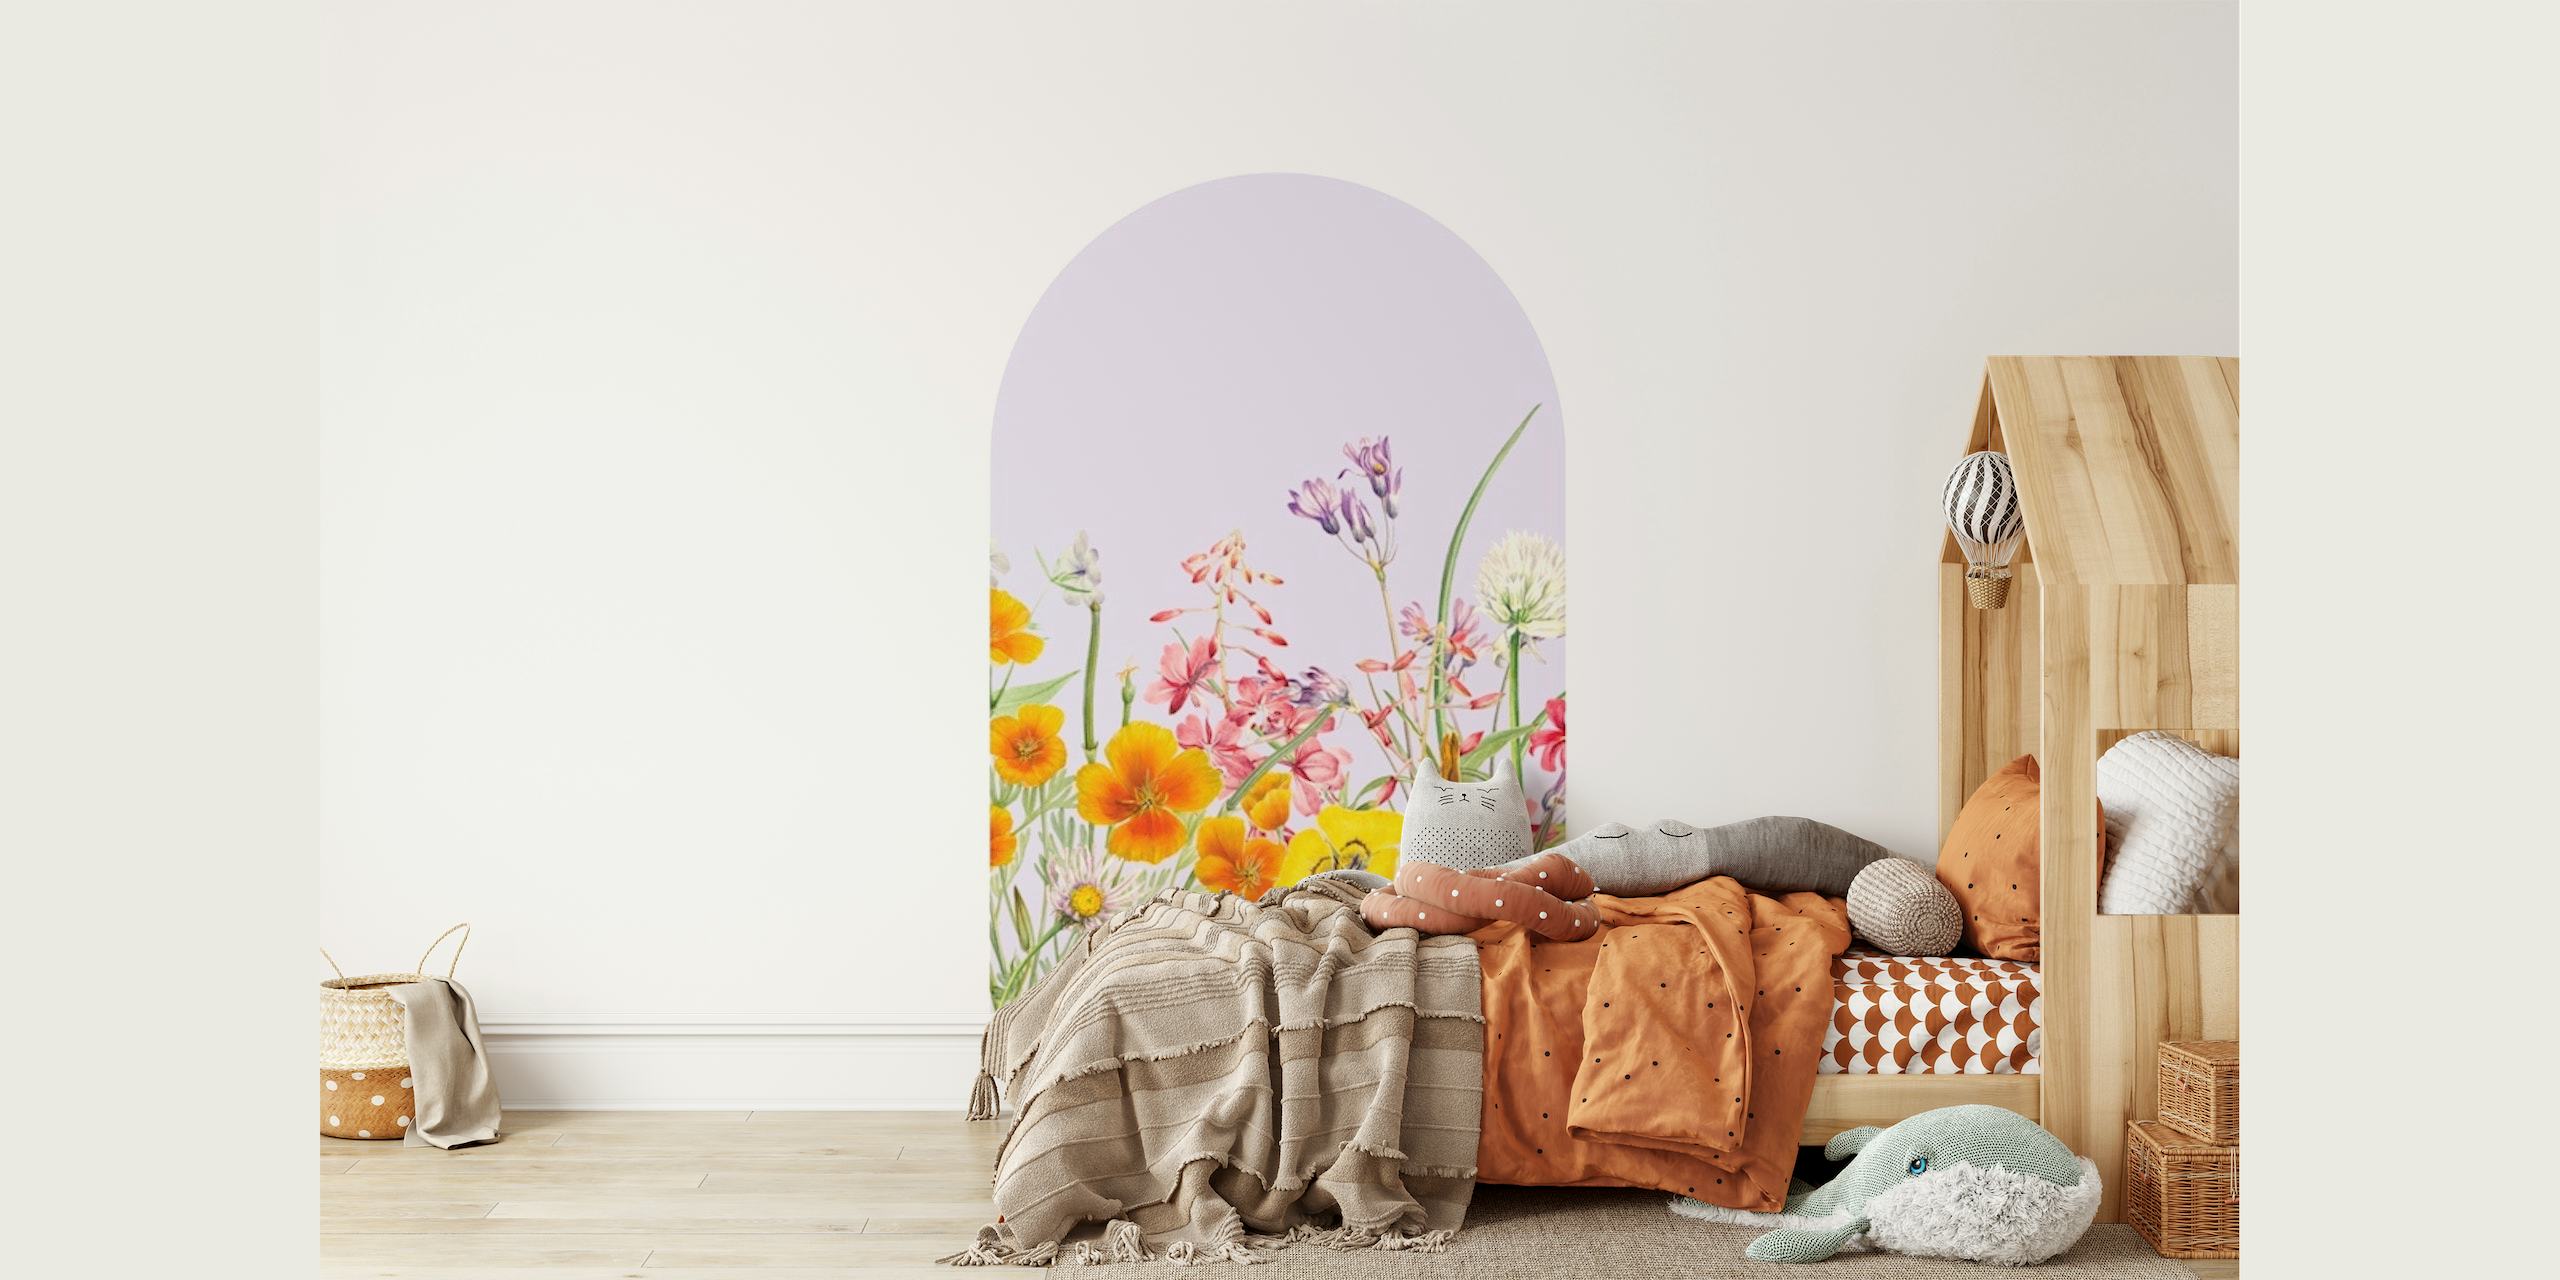 Pastelkleurige Floral Arch muurschildering met wilde bloemen in zachte tinten